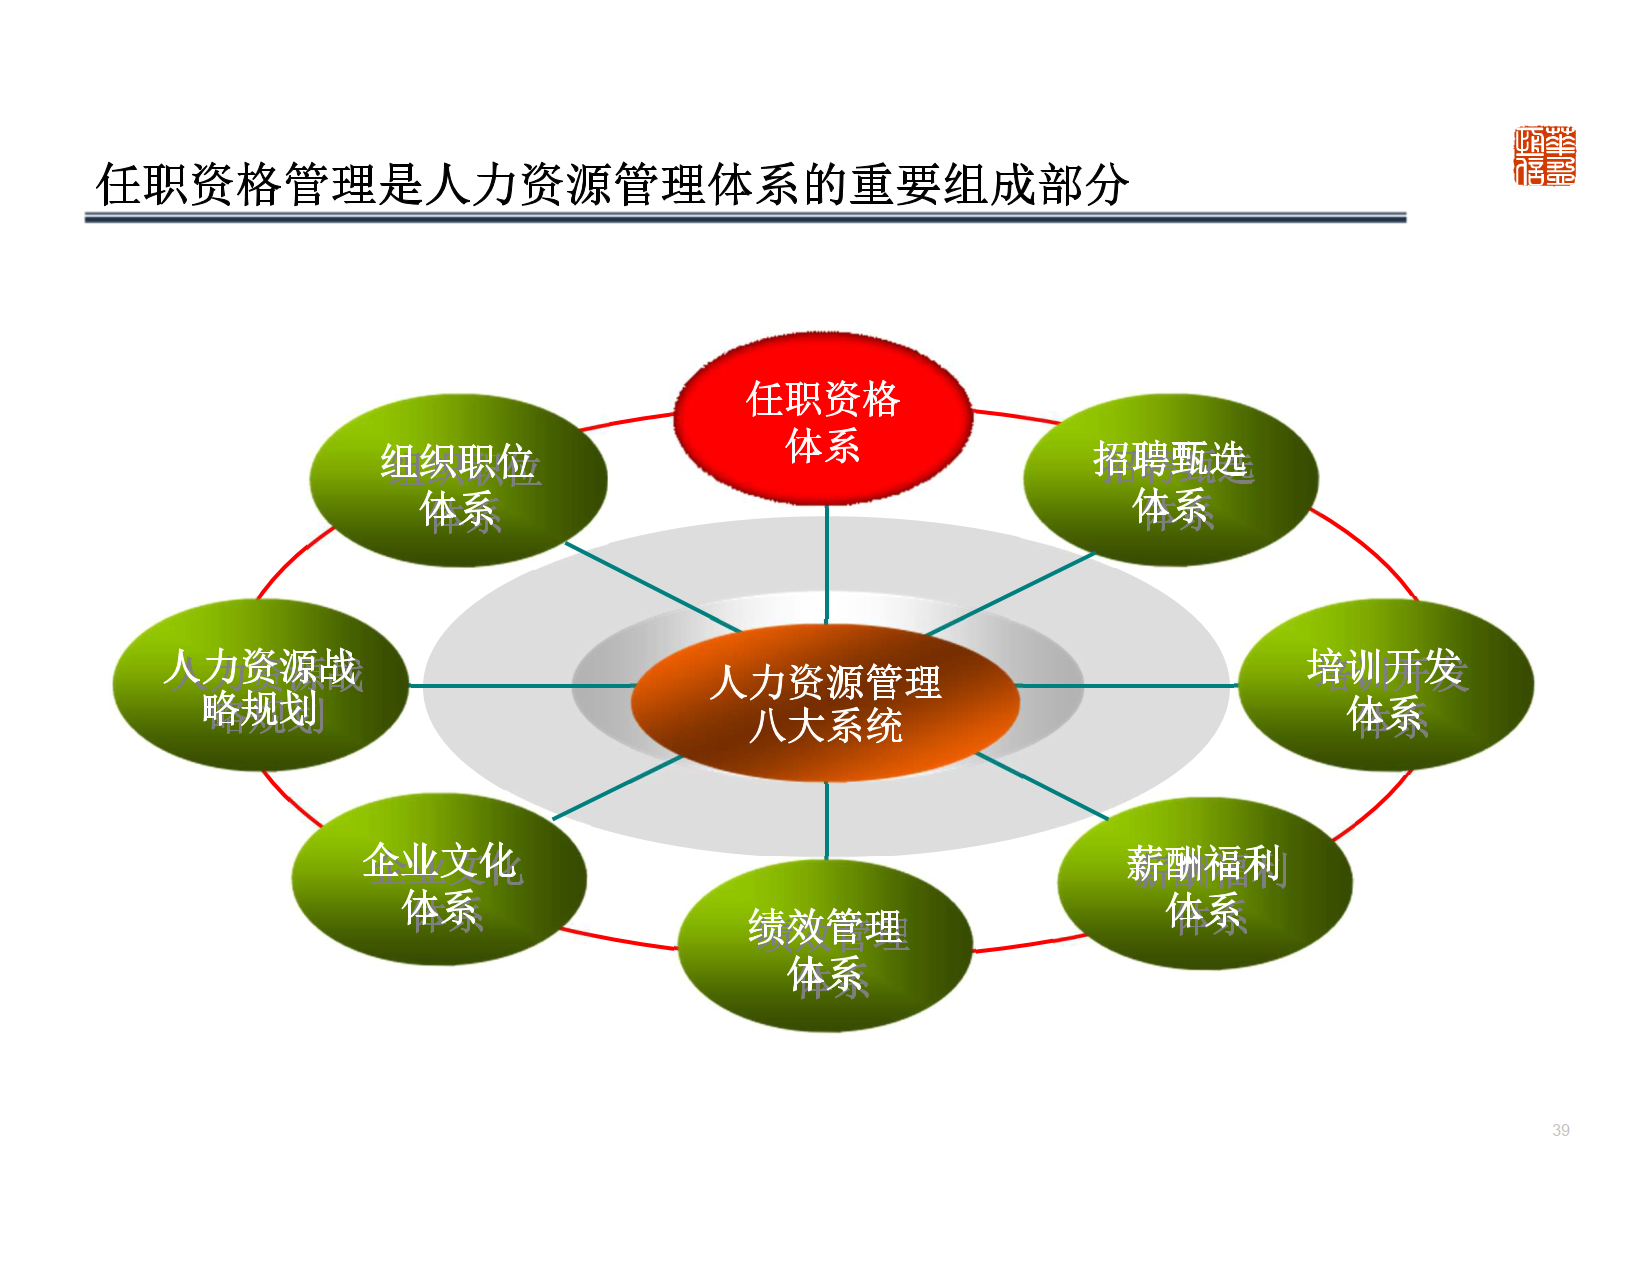 深圳XX管理顾问有限公司-基于能力的任职资格体系设计及应用 Copy_9.png